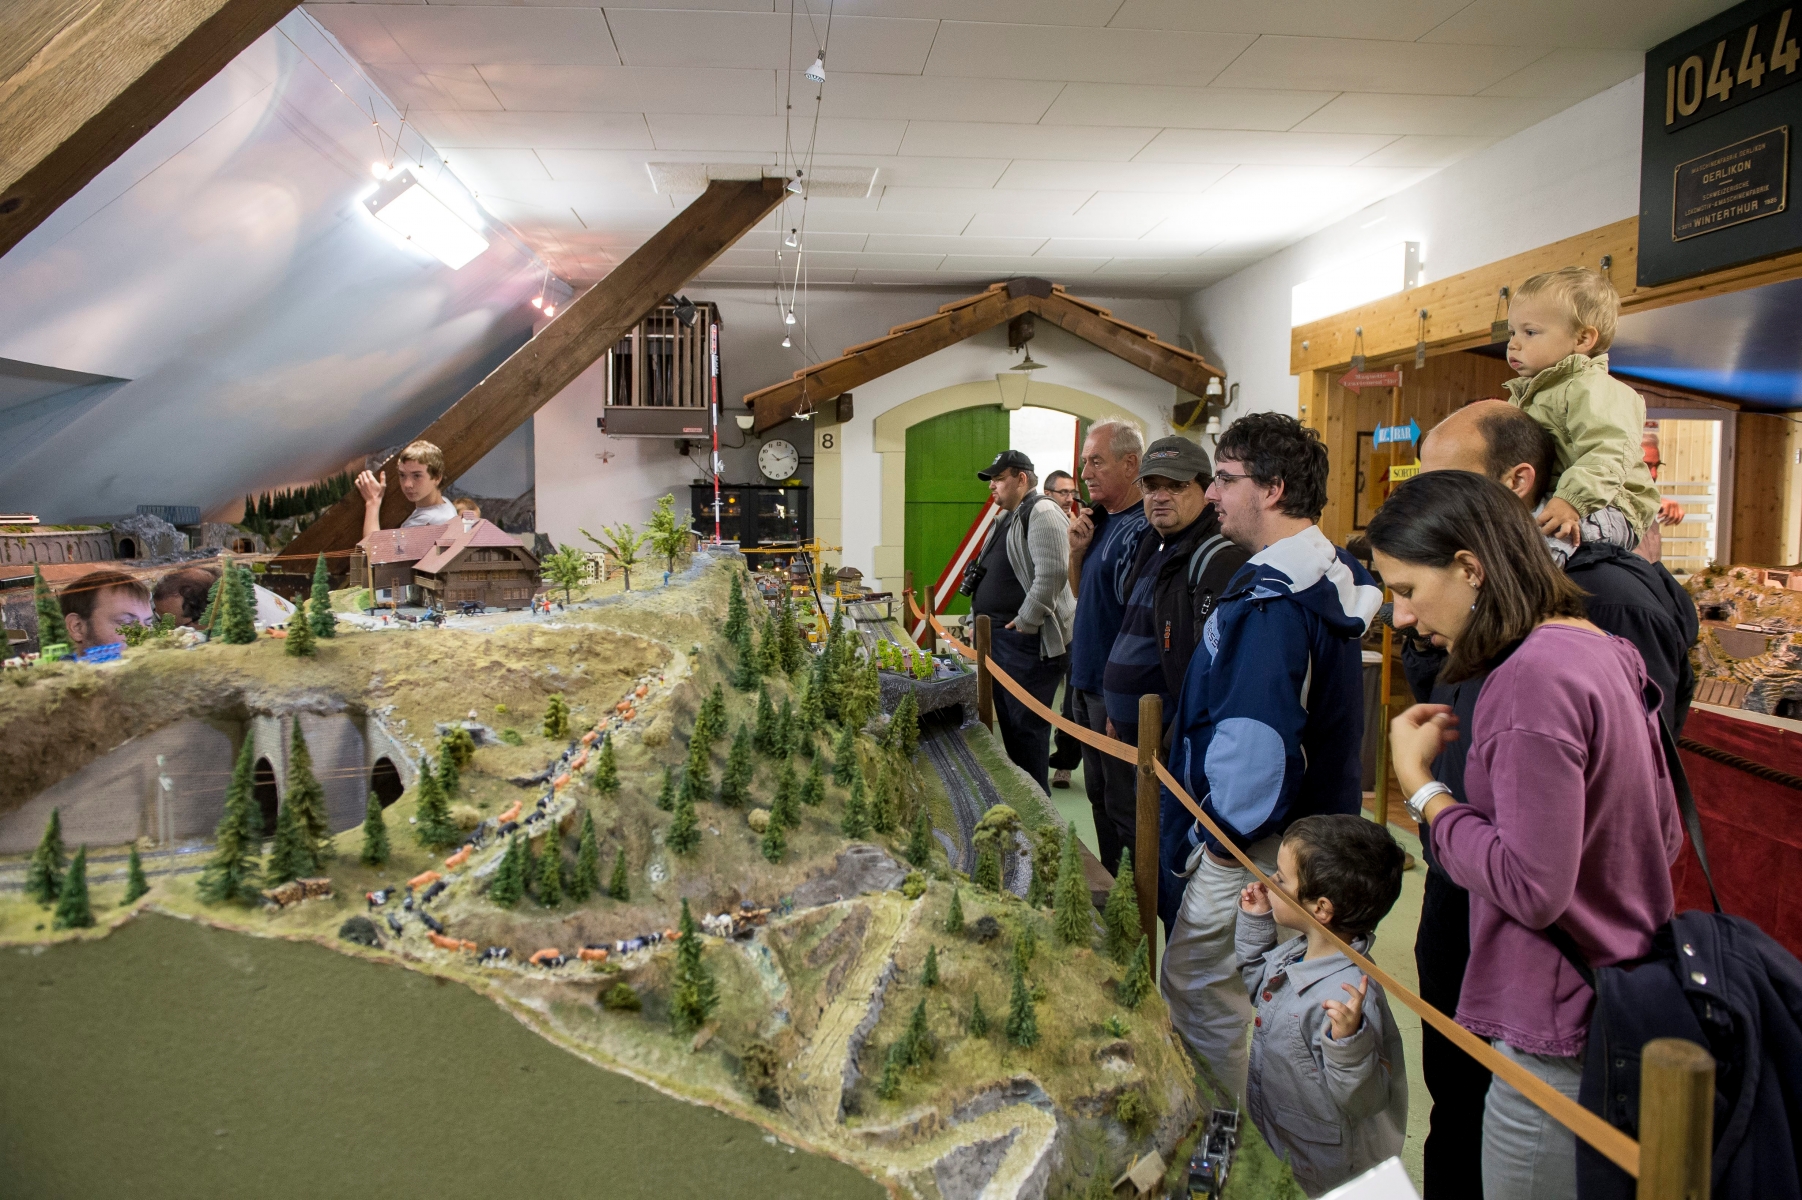 Le Club des amis des chemins de fer organise des portes ouvertes sur les maquettes de trains electrique.  

La Chaux-de-Fonds, le 15.10.2016

Photo : Lucas Vuitel